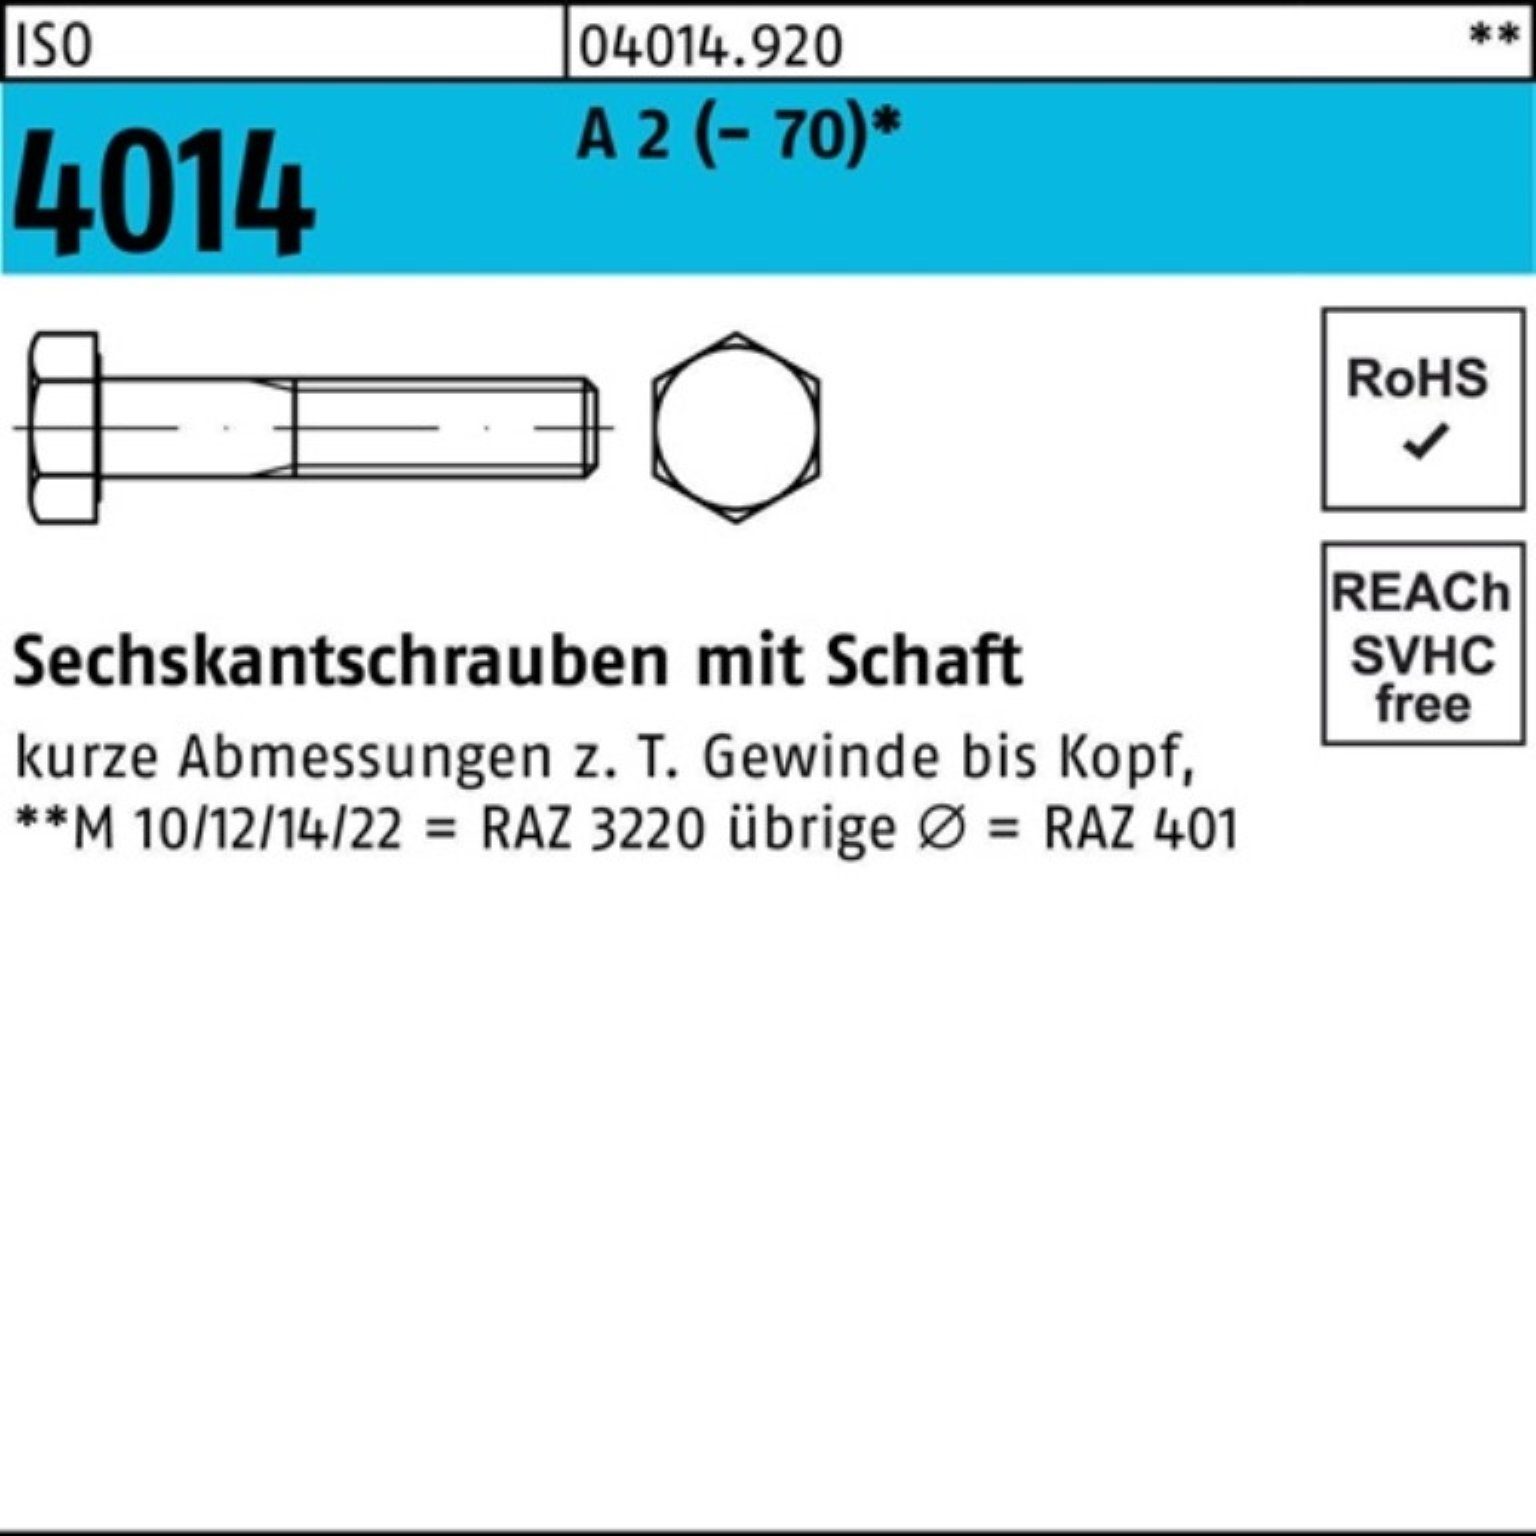 Bufab Sechskantschraube 100er Pack Sechskantschraube ISO 4014 Schaft M10x 170 A 2 (70) 1 St